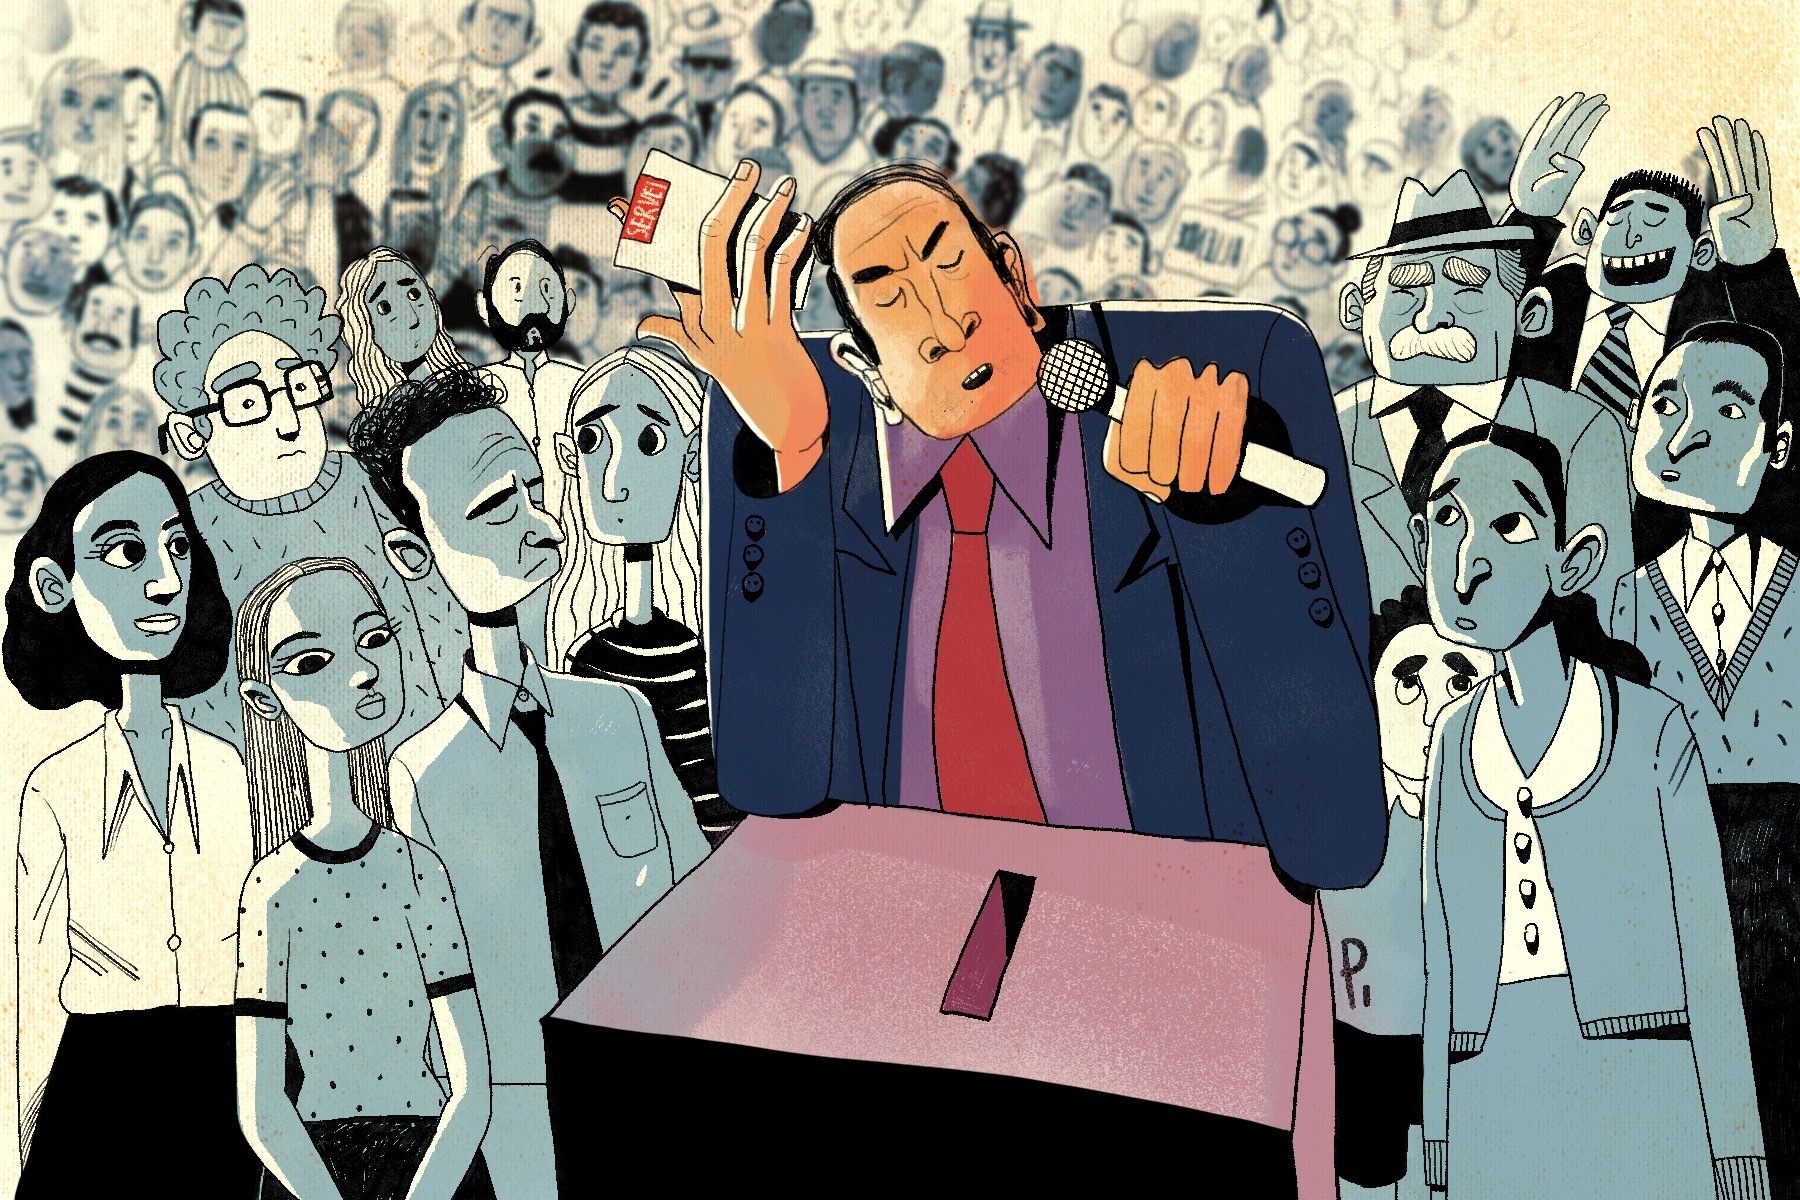 La ilustración muestra a un líder evangélico depositando su voto en las urnas